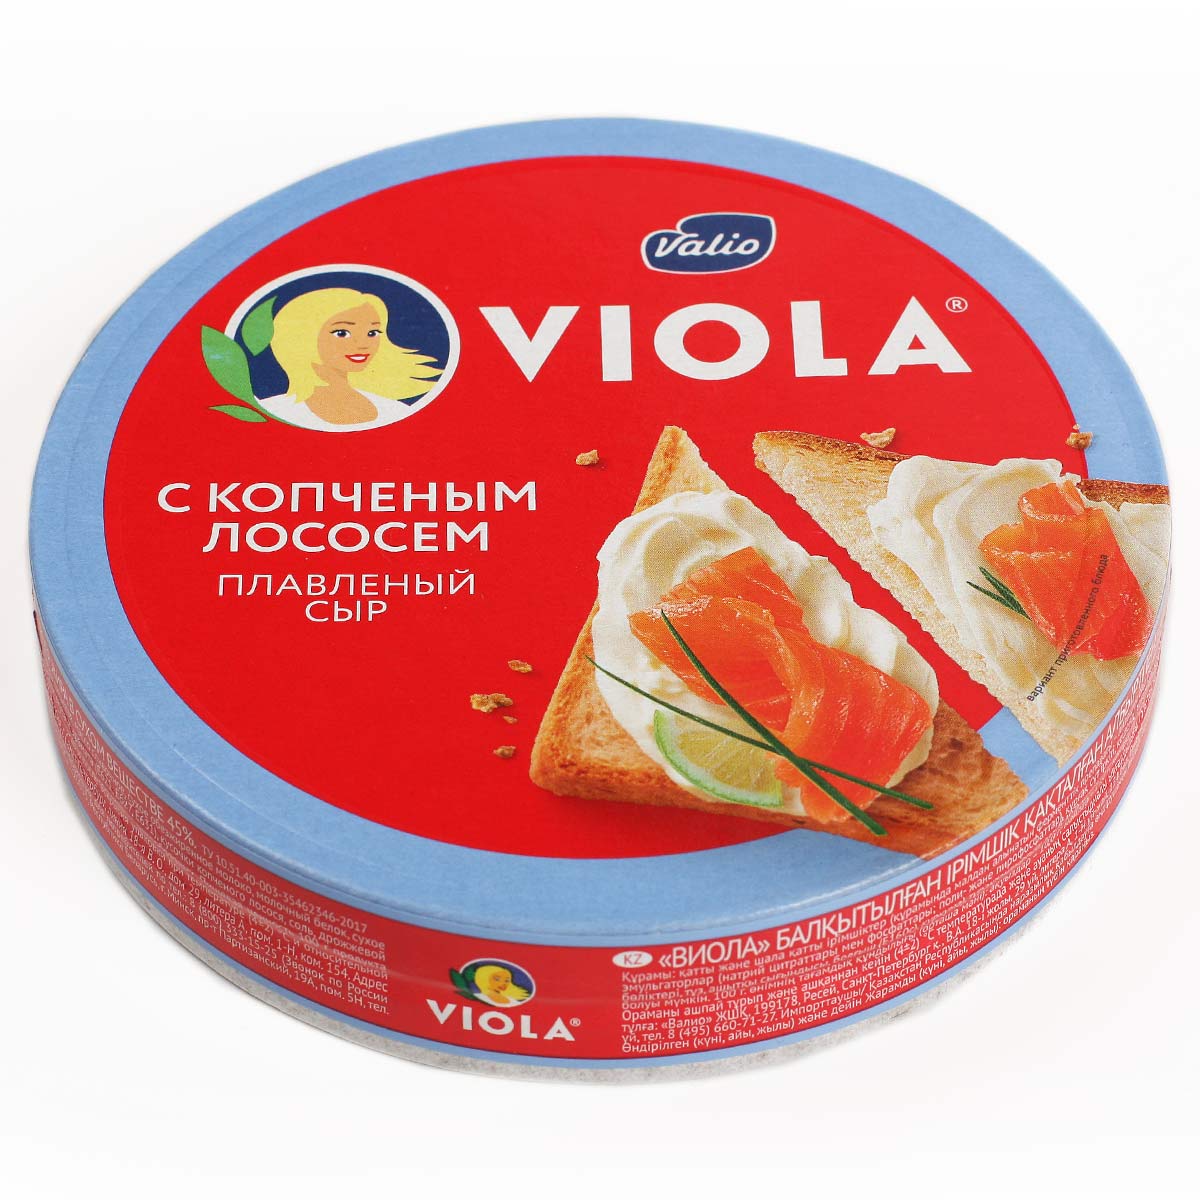 VIOLA сыр плавленый с копченым лососем Виола 45% 130г